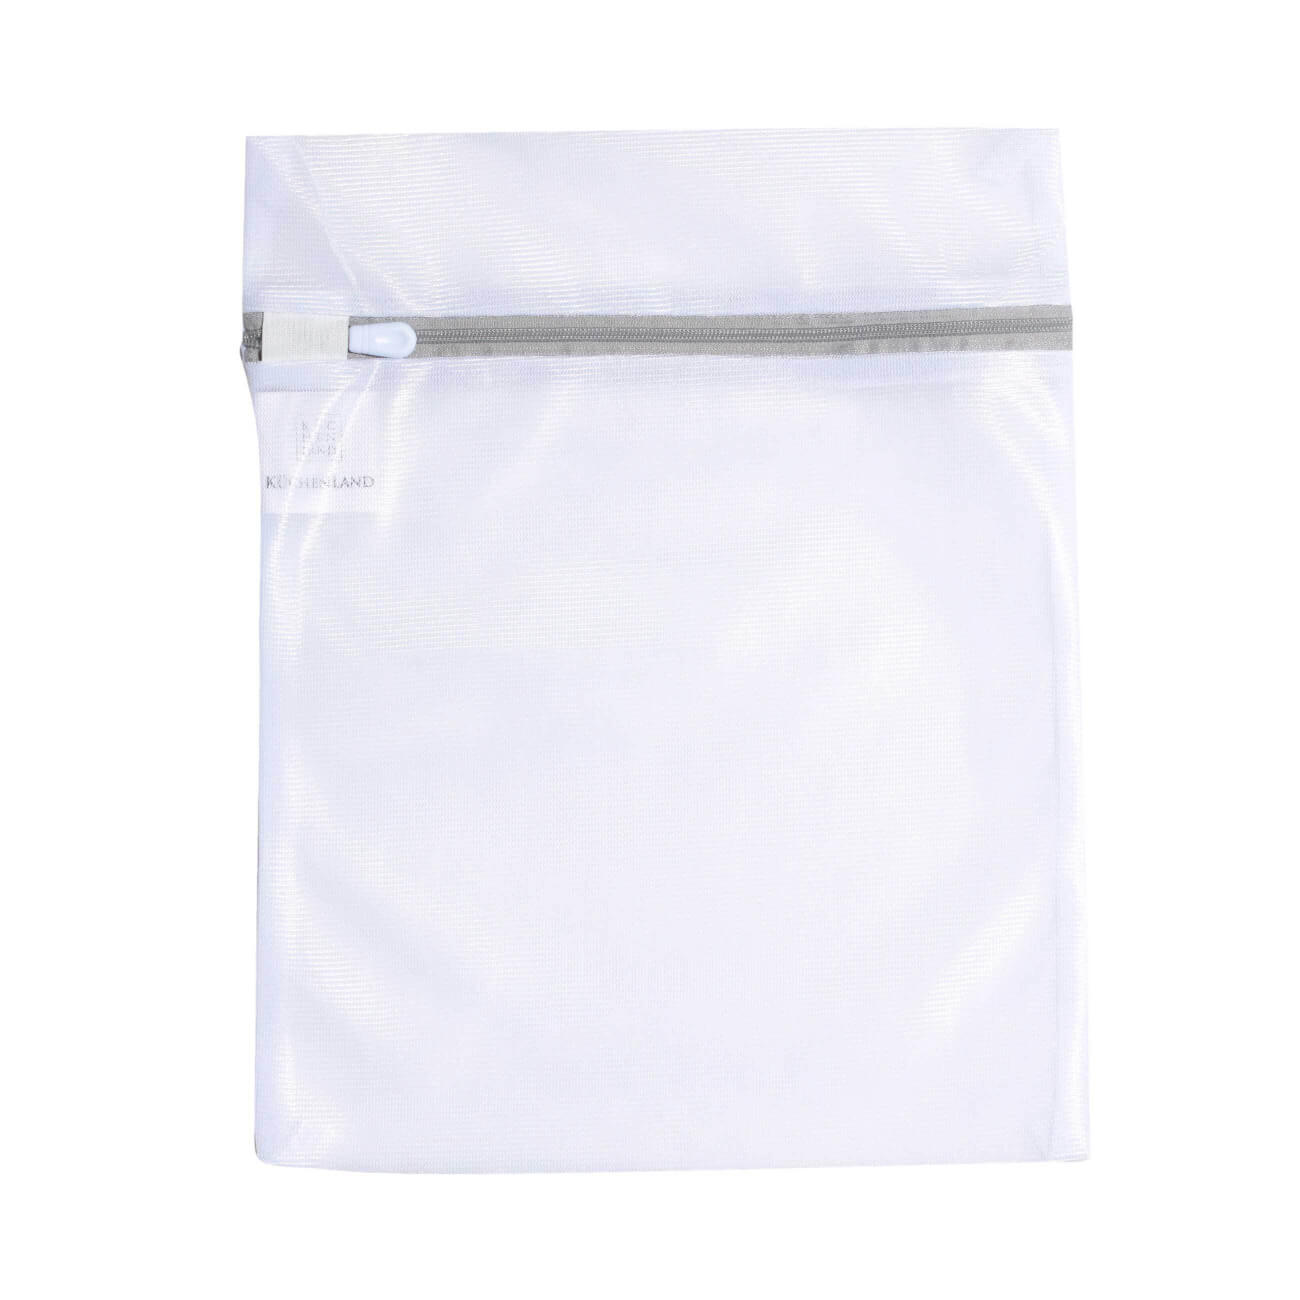 Мешок для стирки нижнего белья, 25х30 см, полиэстер, бело-серый, Safety plus мешок для стирки нижнего белья attribute